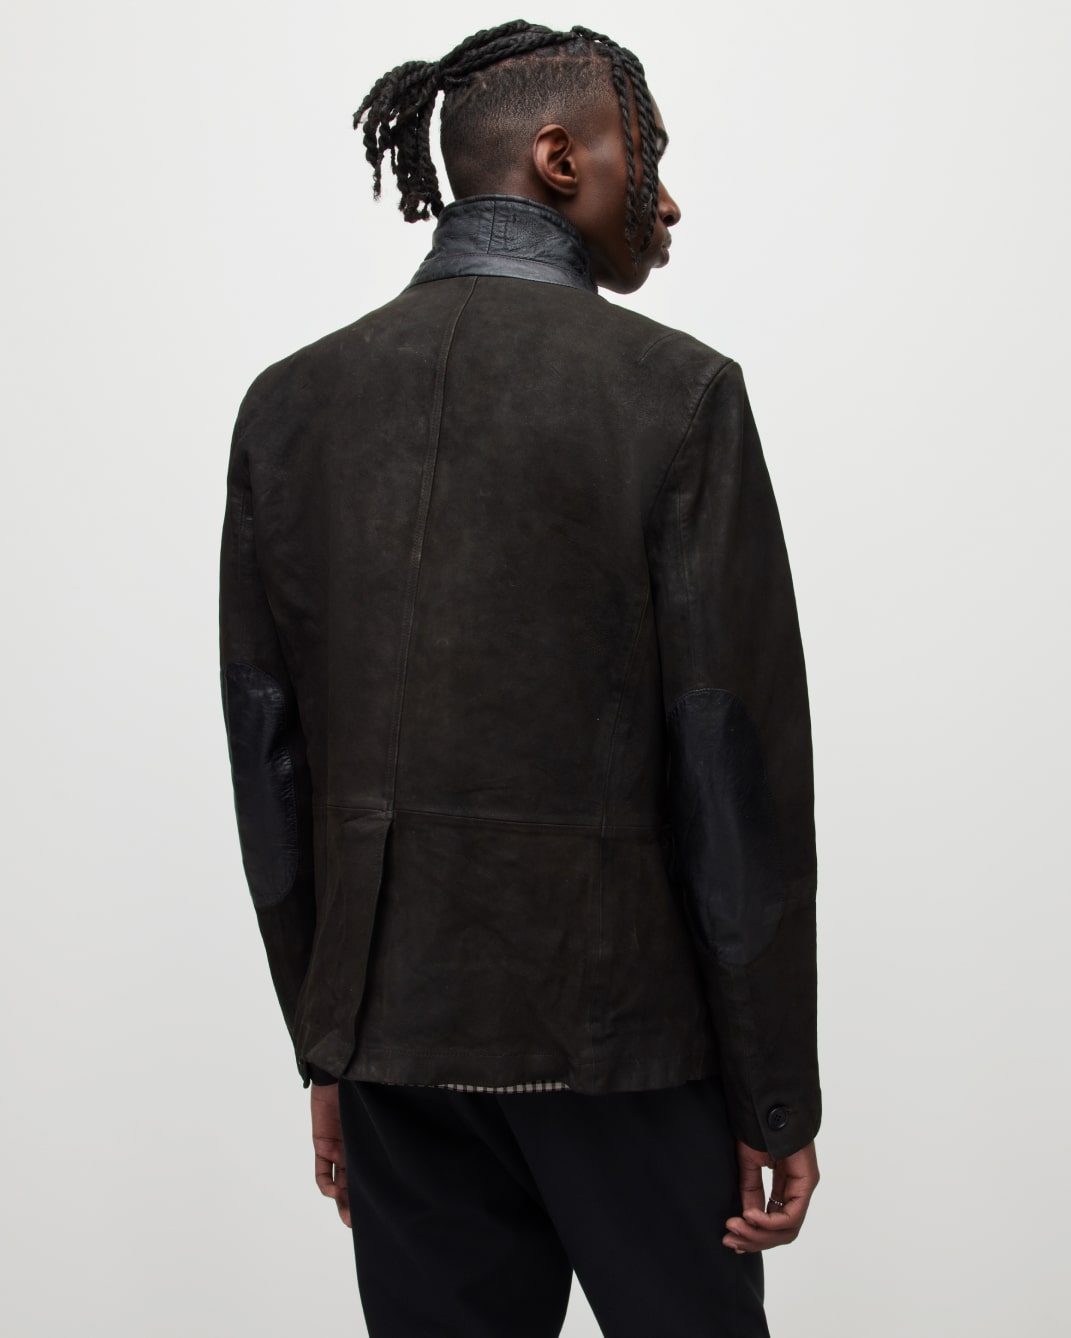 Men's Survey Leather Jacket - Back View